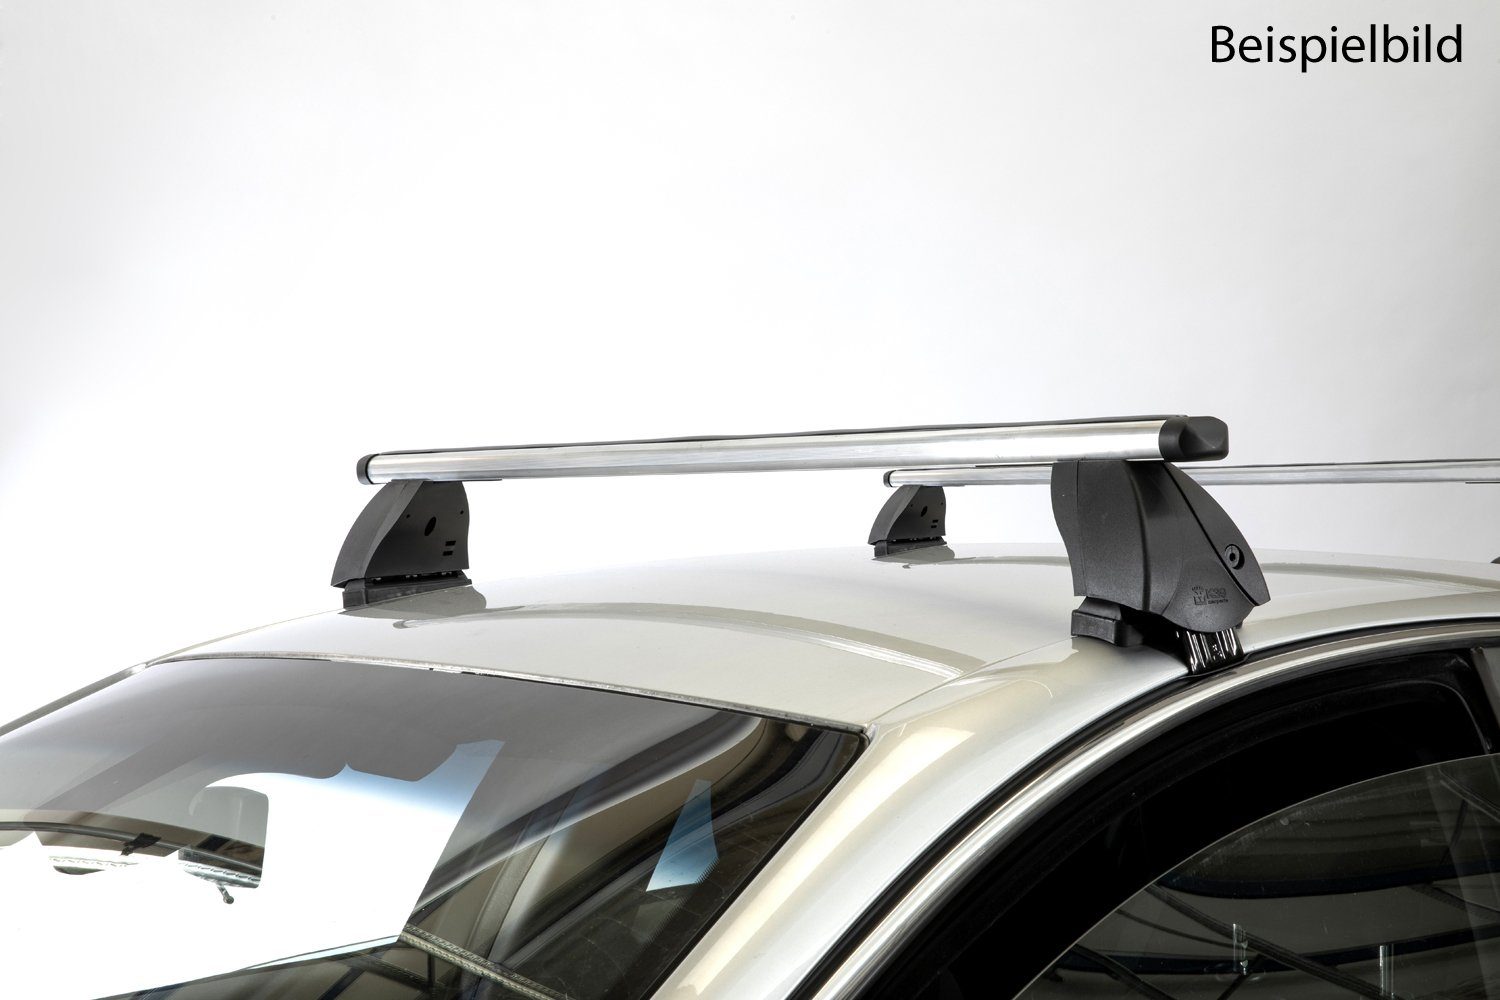 VDP Dachträger (Passend für Ihren Subaru Pleo (5Türer) ab 07), Dachträger K1 PRO Aluminium kompatibel mit Subaru Pleo (5Türer) ab 07